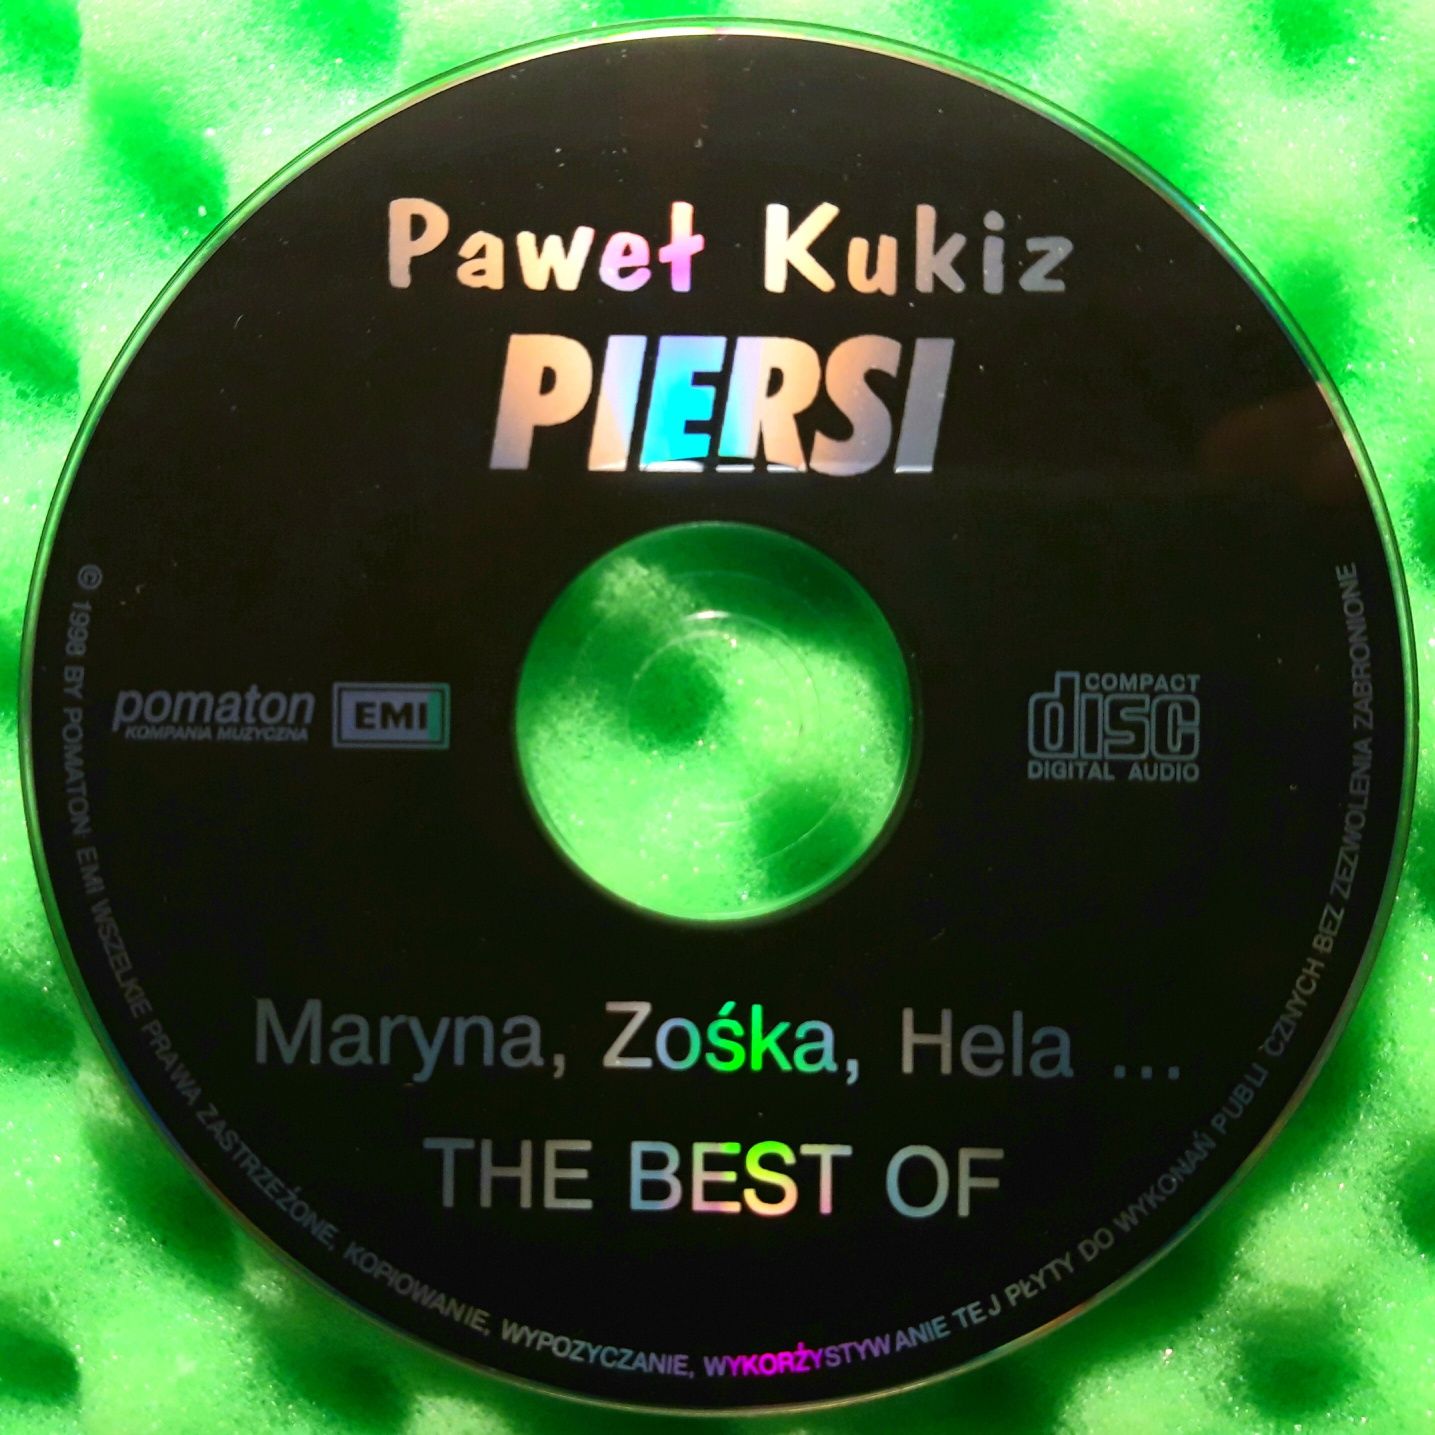 Paweł Kukiz, Piersi – Maryna, Zośka, Hela... The Best Of (CD, 1998)